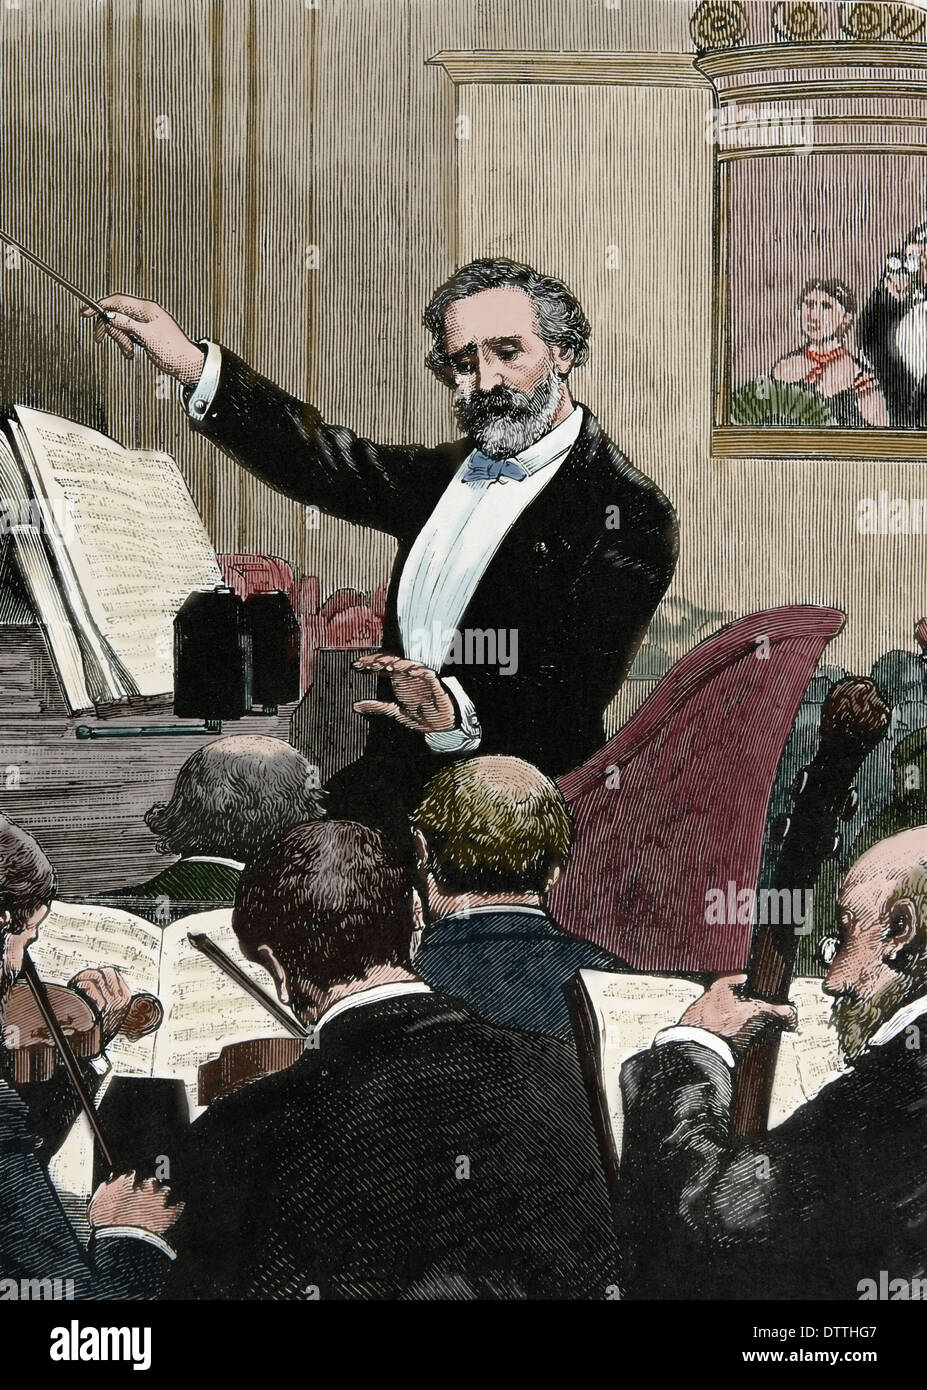 Giuseppe Verdi (1813-1901). Italienischer Komponist der Romantik. "Frankreich, Paris. Verdi eine seiner eigenen Opern dirigieren. Farbe-Gravur Stockfoto